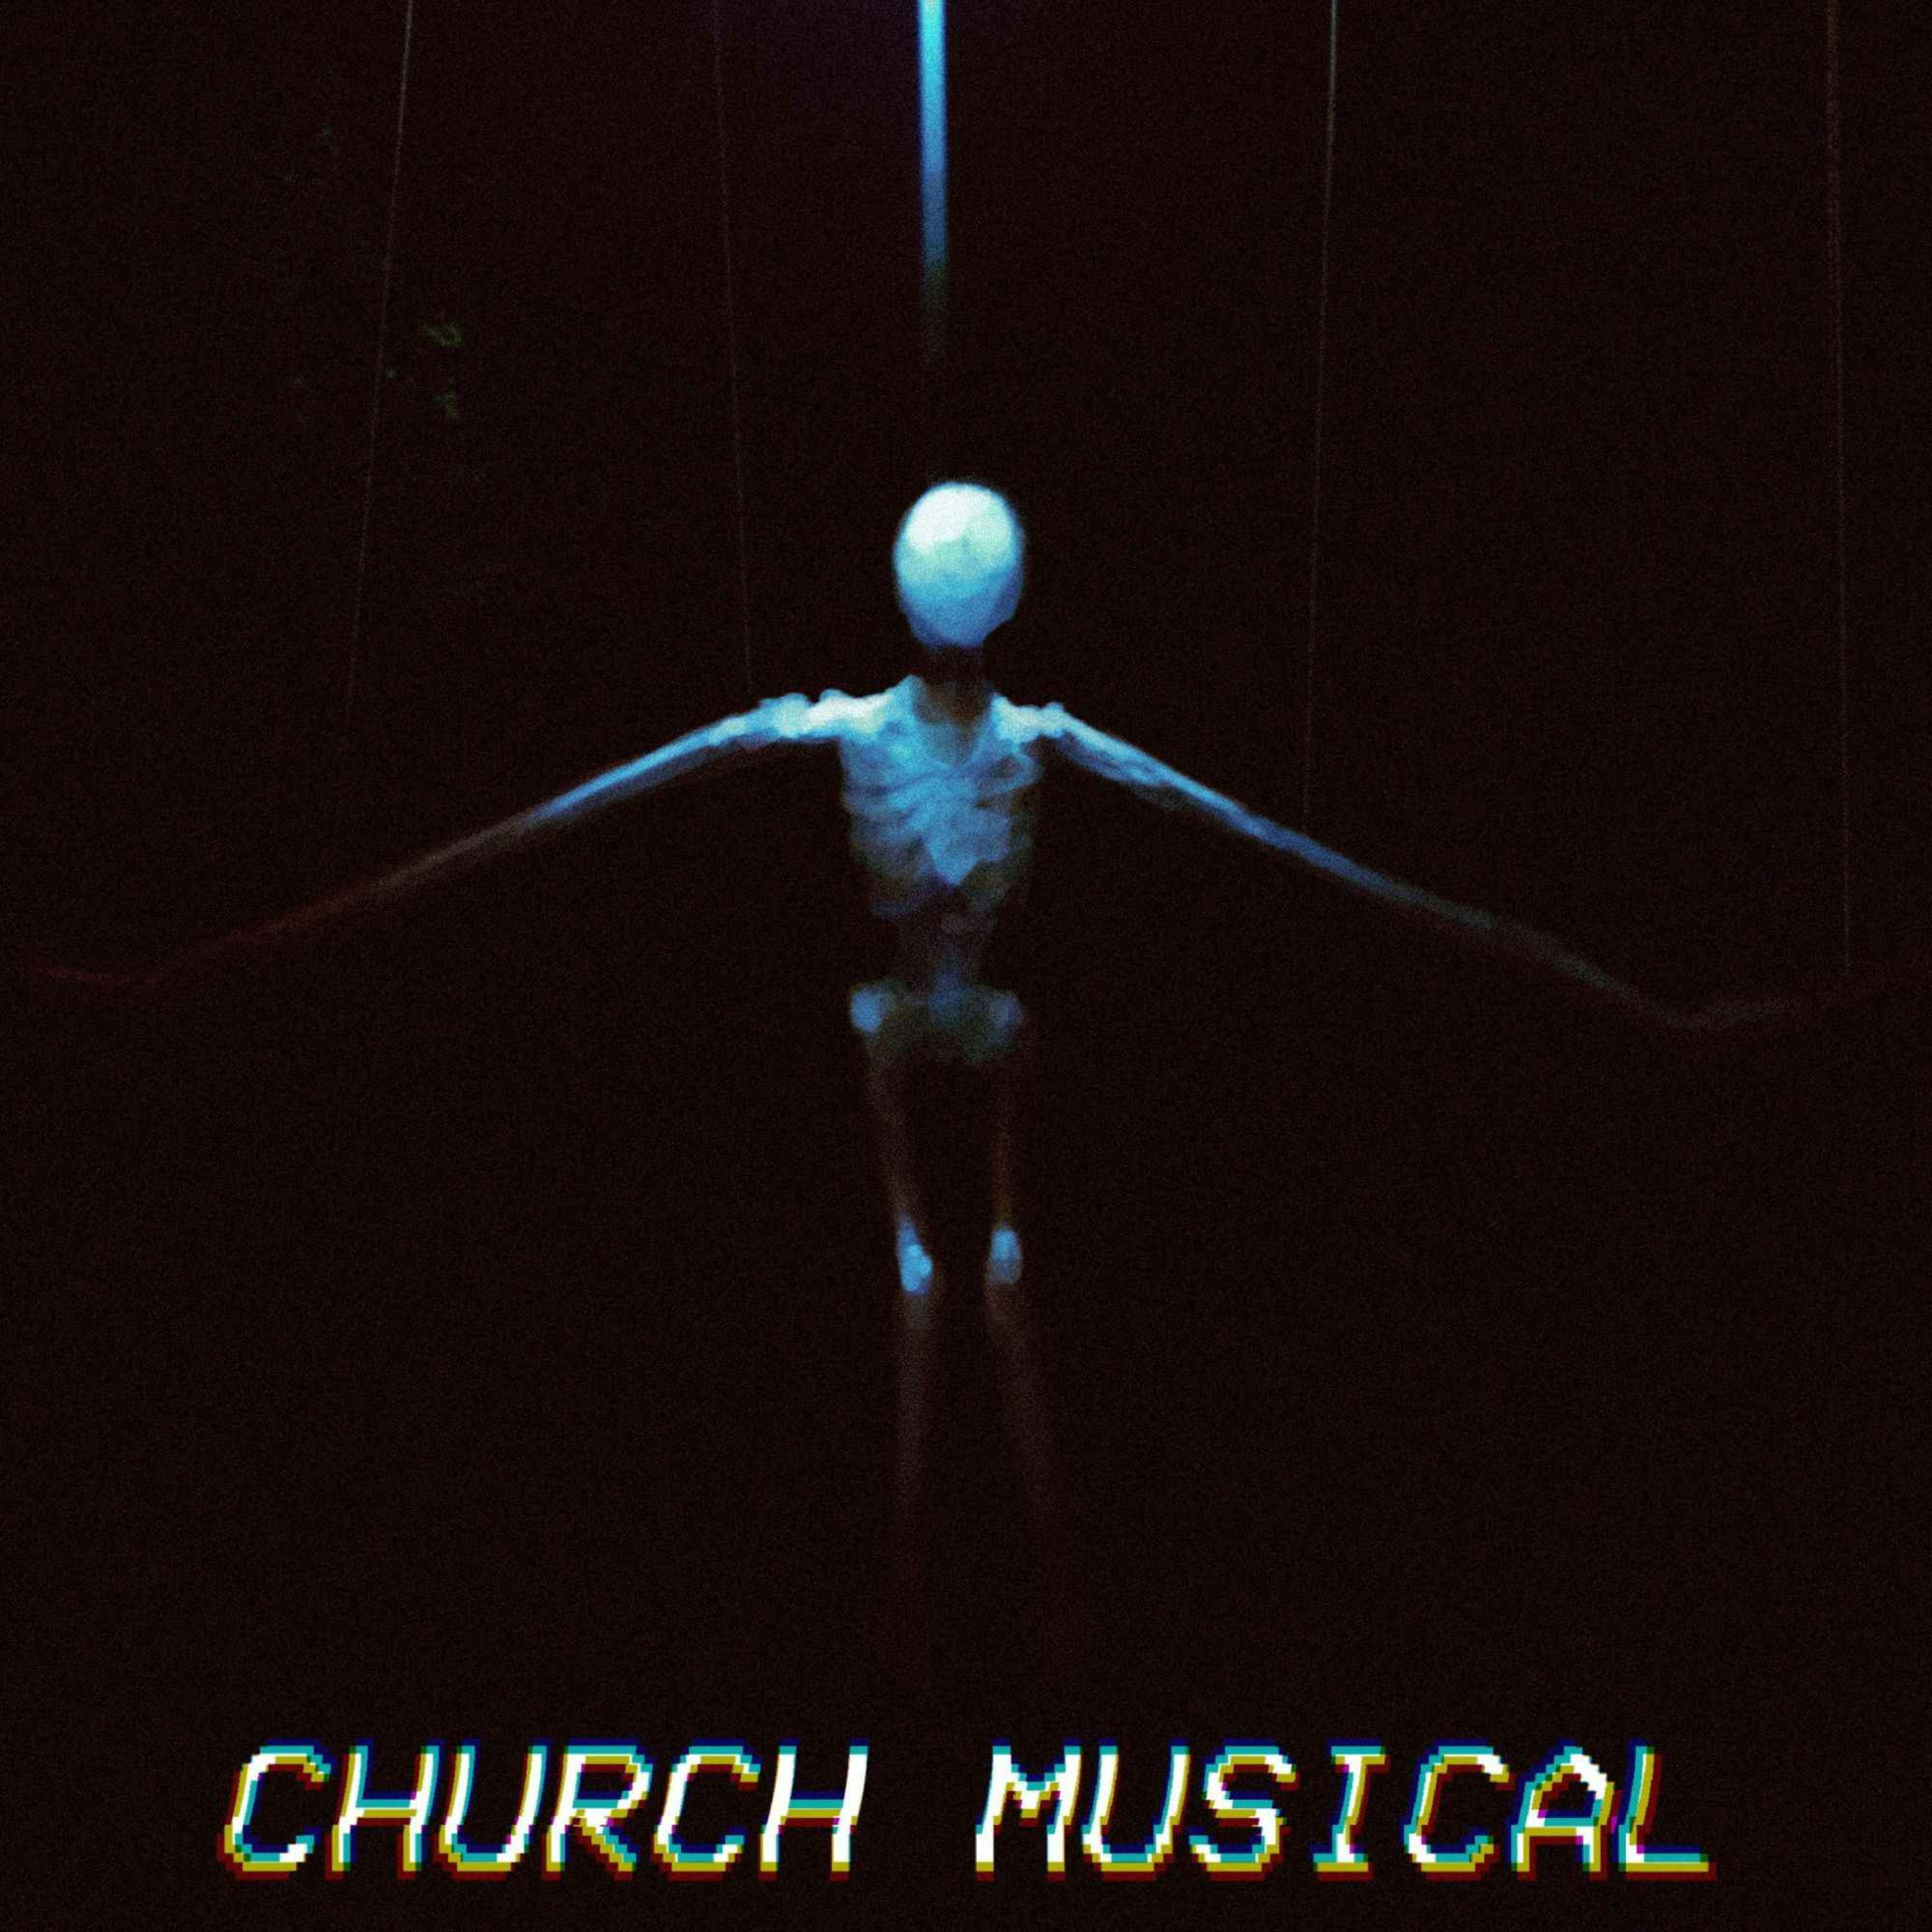 Church Musical